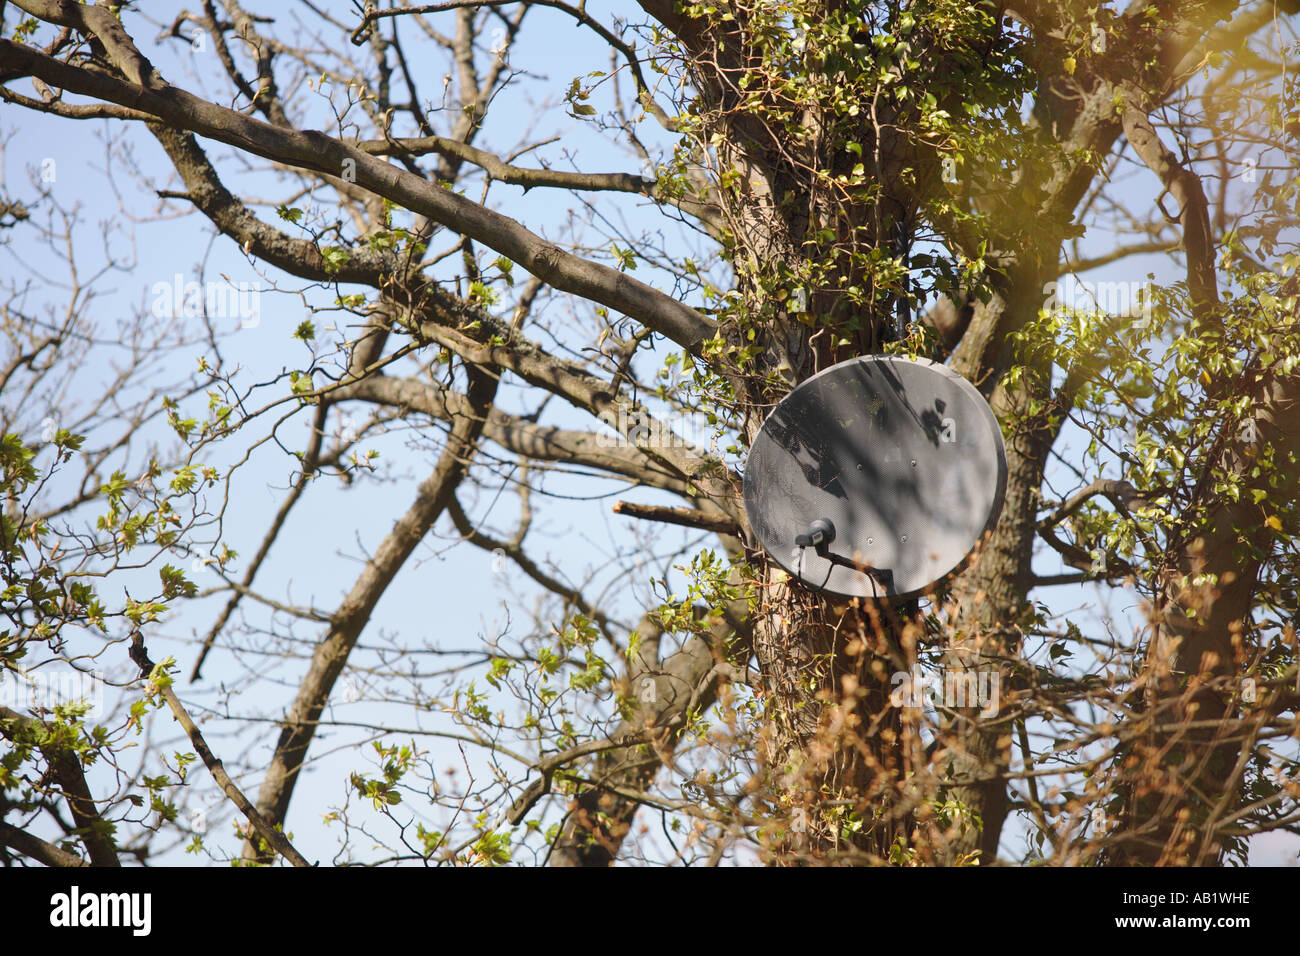 Satellite dish nailed to a tree Stock Photo